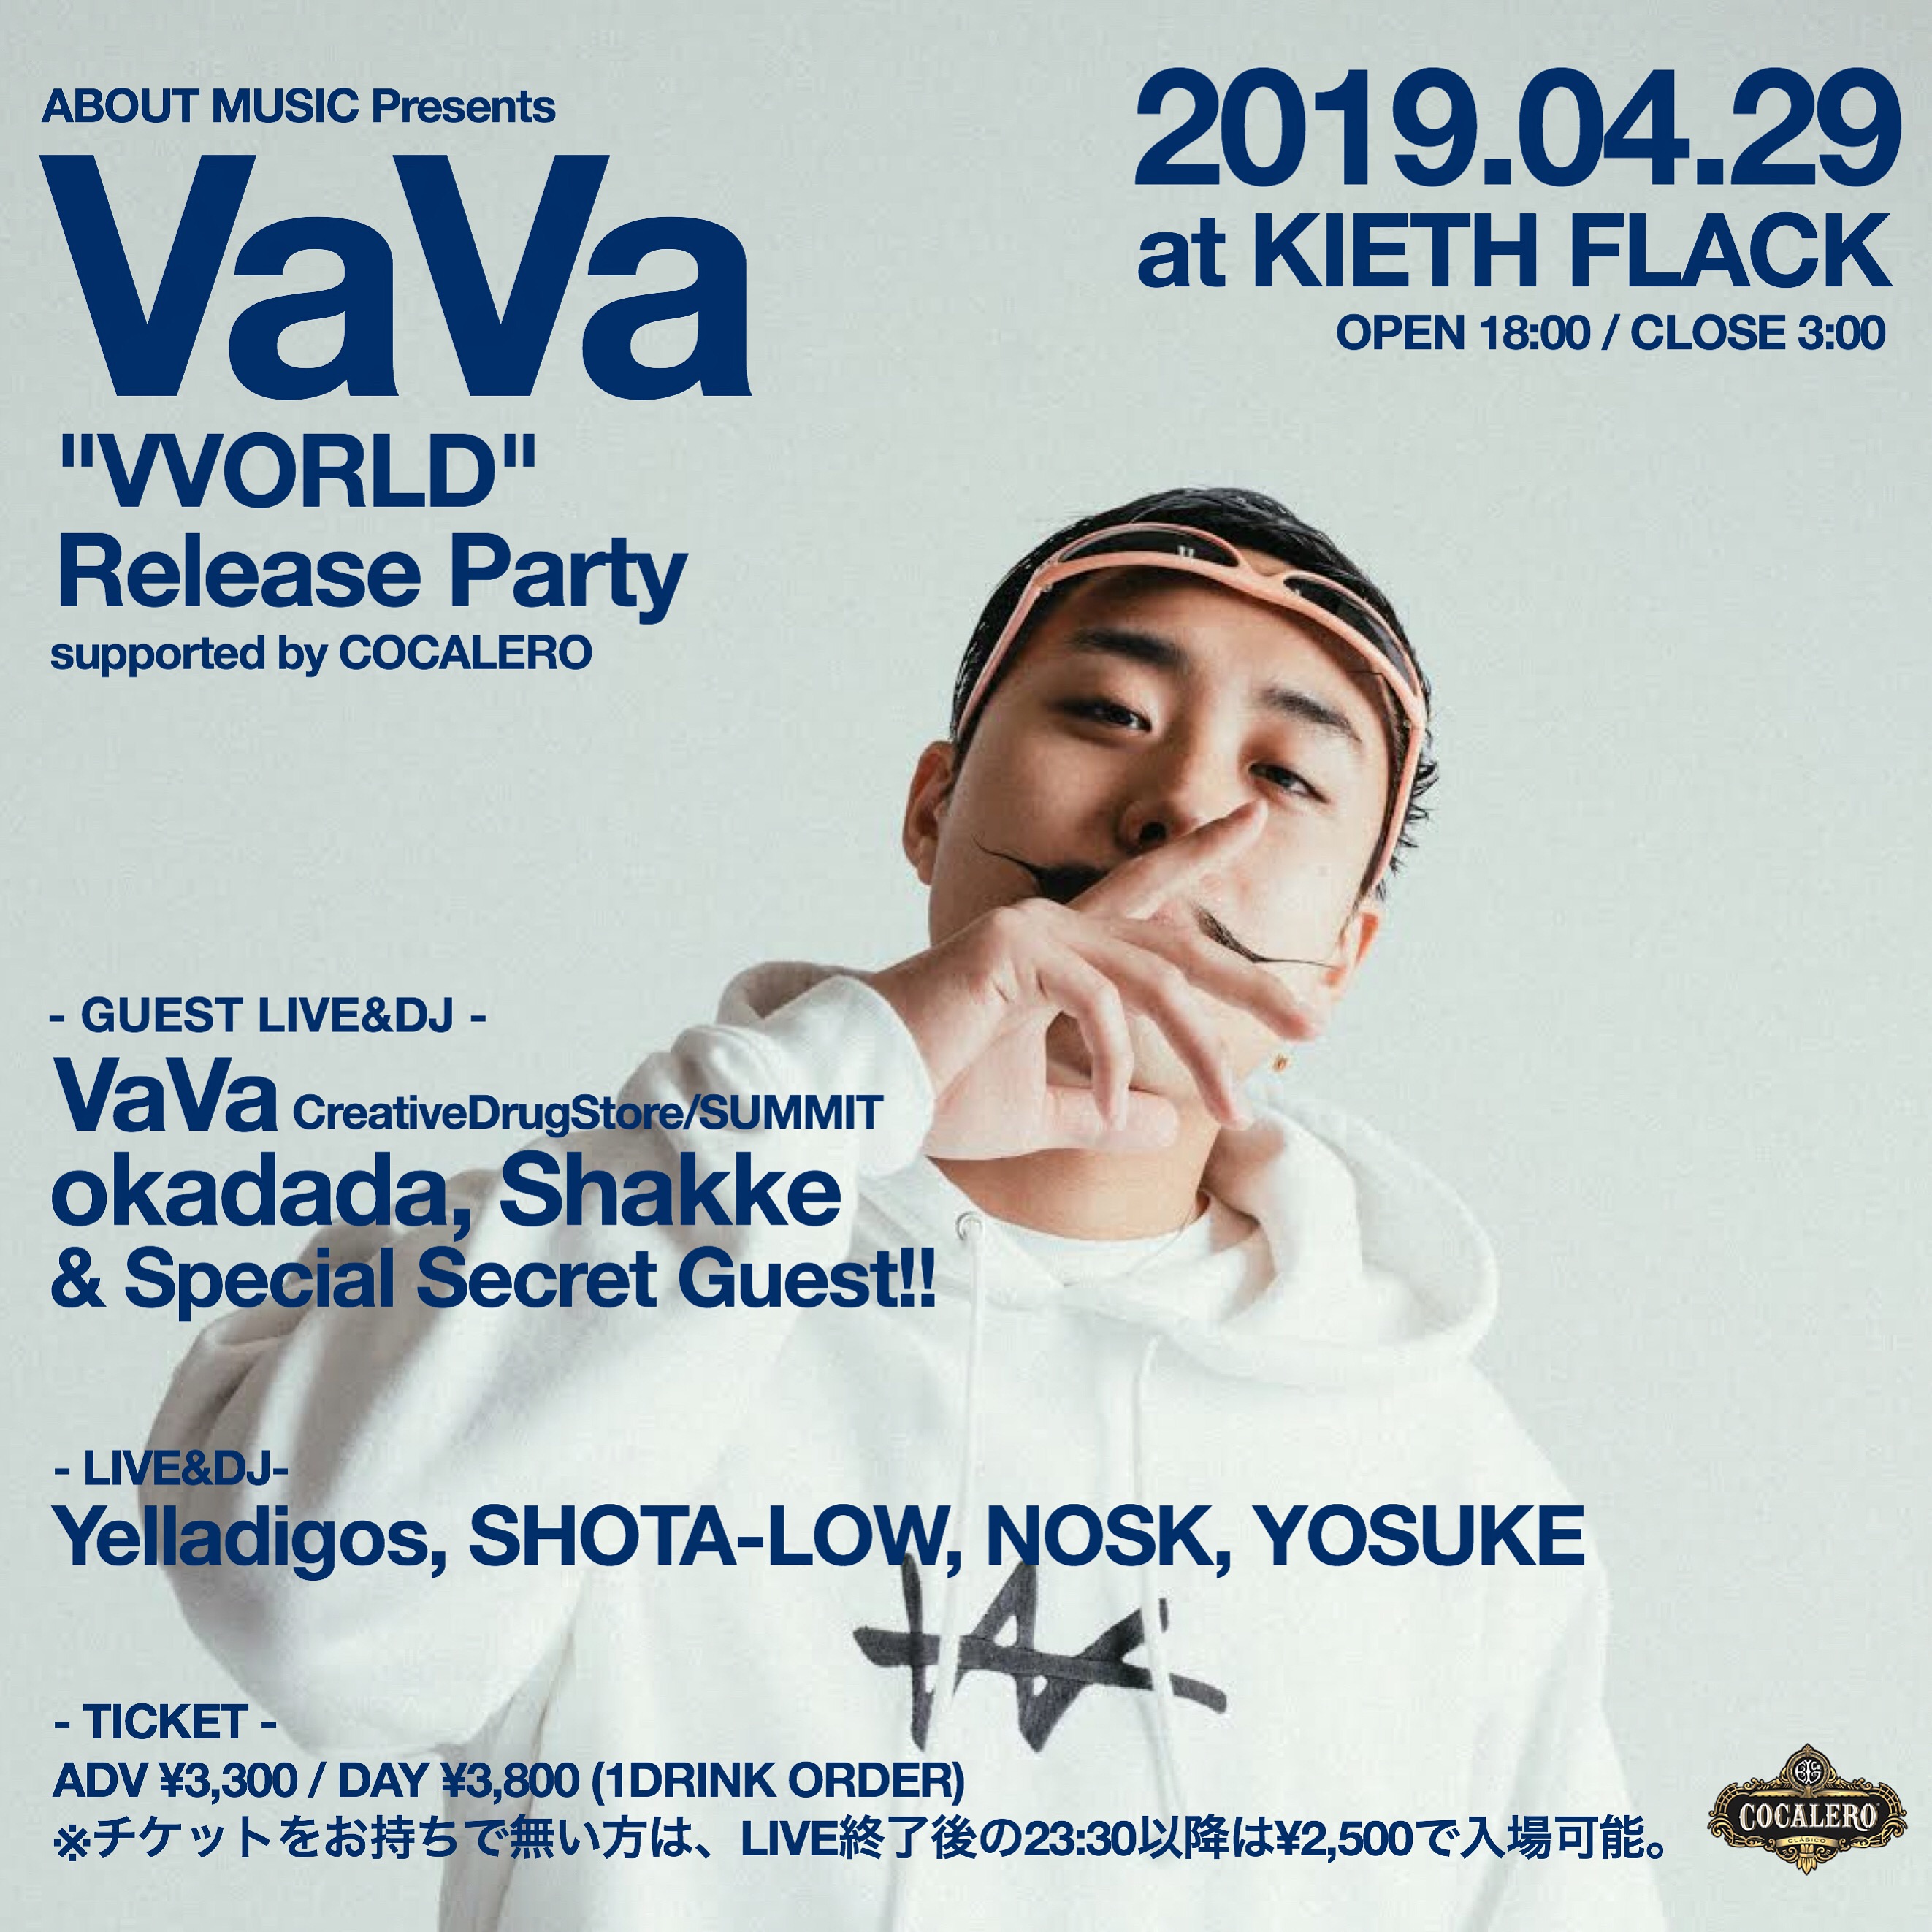 VaVa "VVORLD" Release Party in FUKUOKA